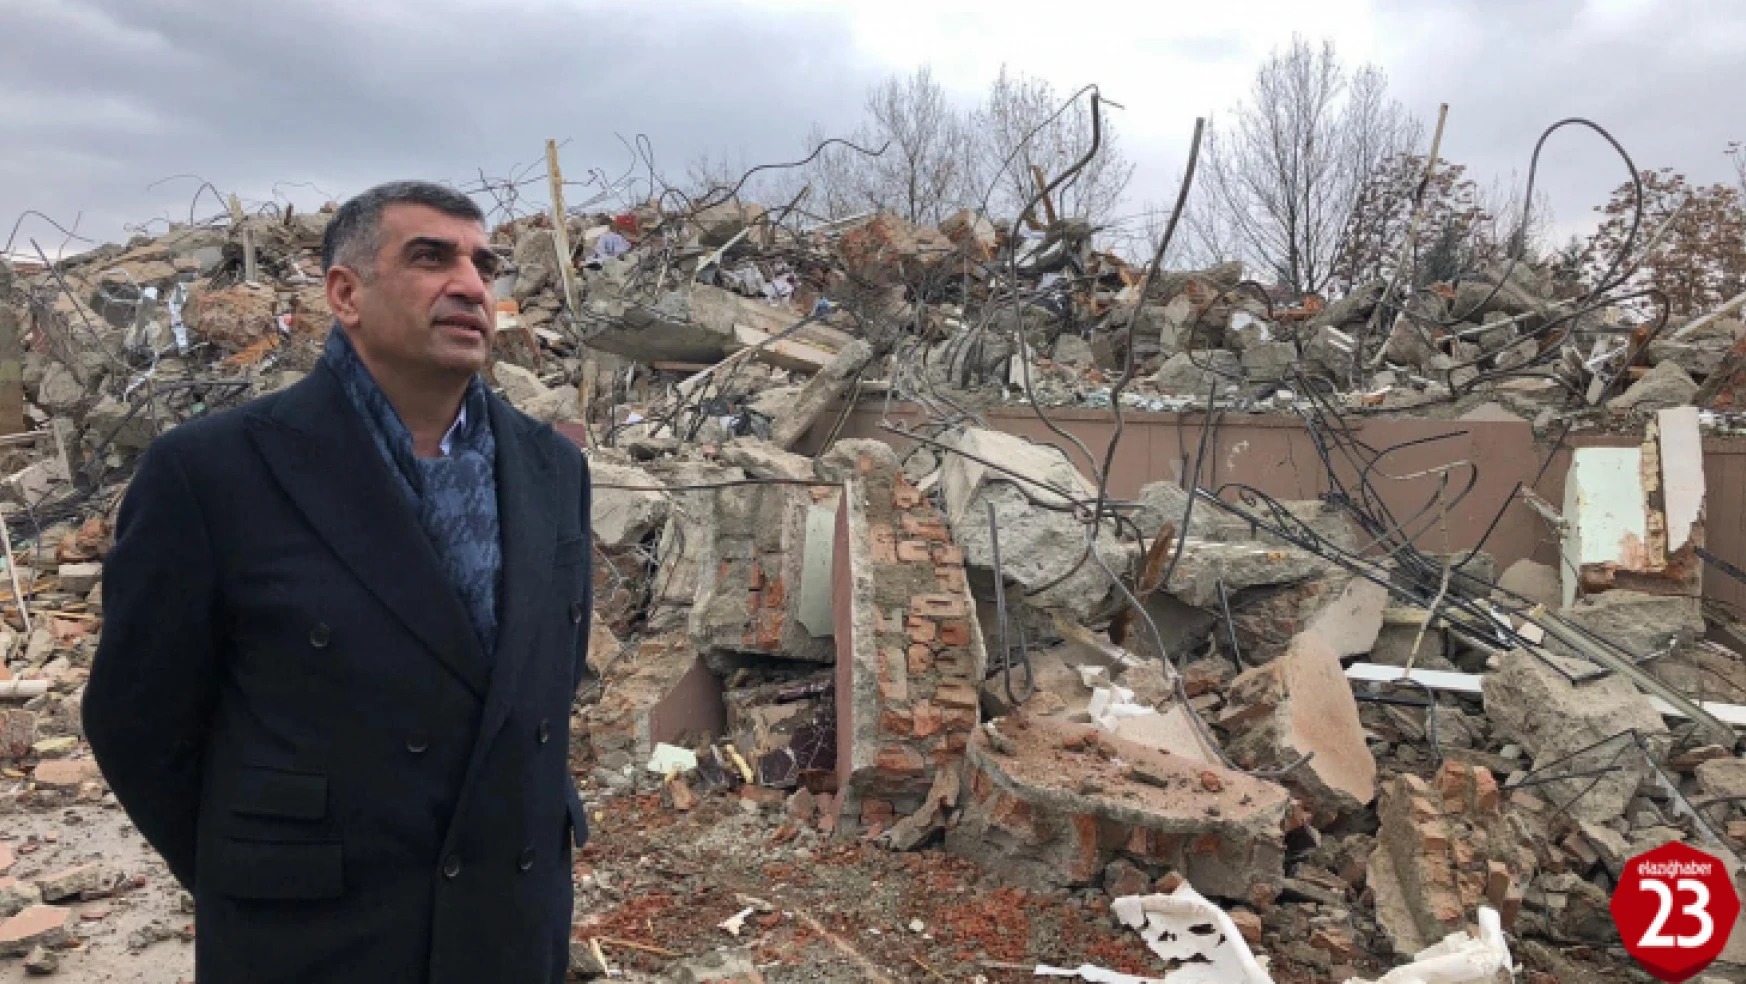 CHP Elazığ Milletvekili Gürsel Erol, Elazığ'da Deprem Sonrasında Hiçbir Şey Yapılmadı Demek Doğru Olmaz